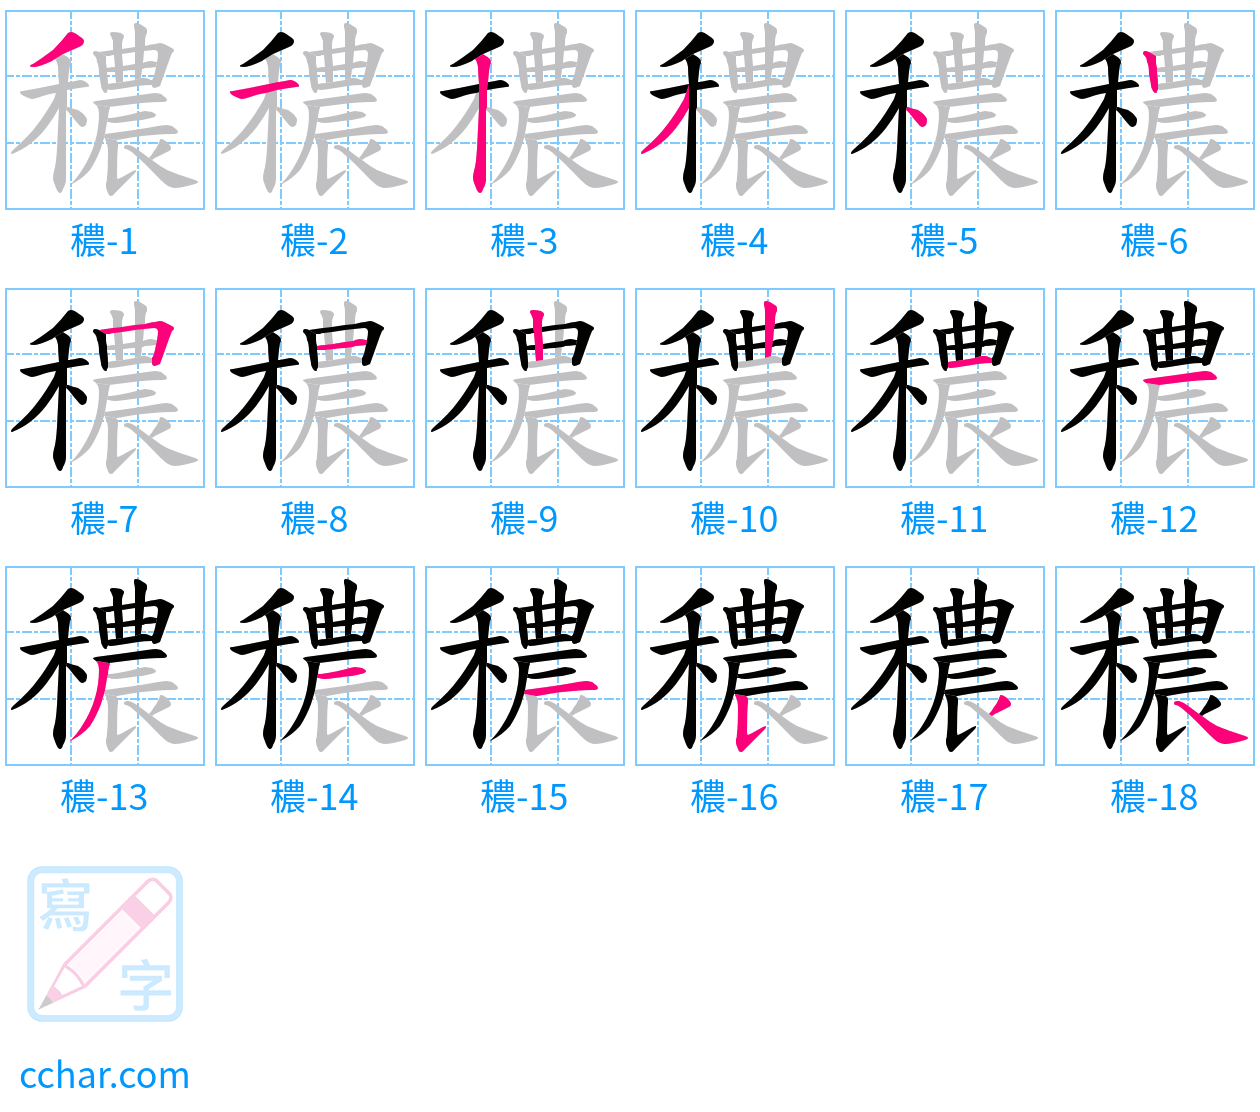 穠 stroke order step-by-step diagram